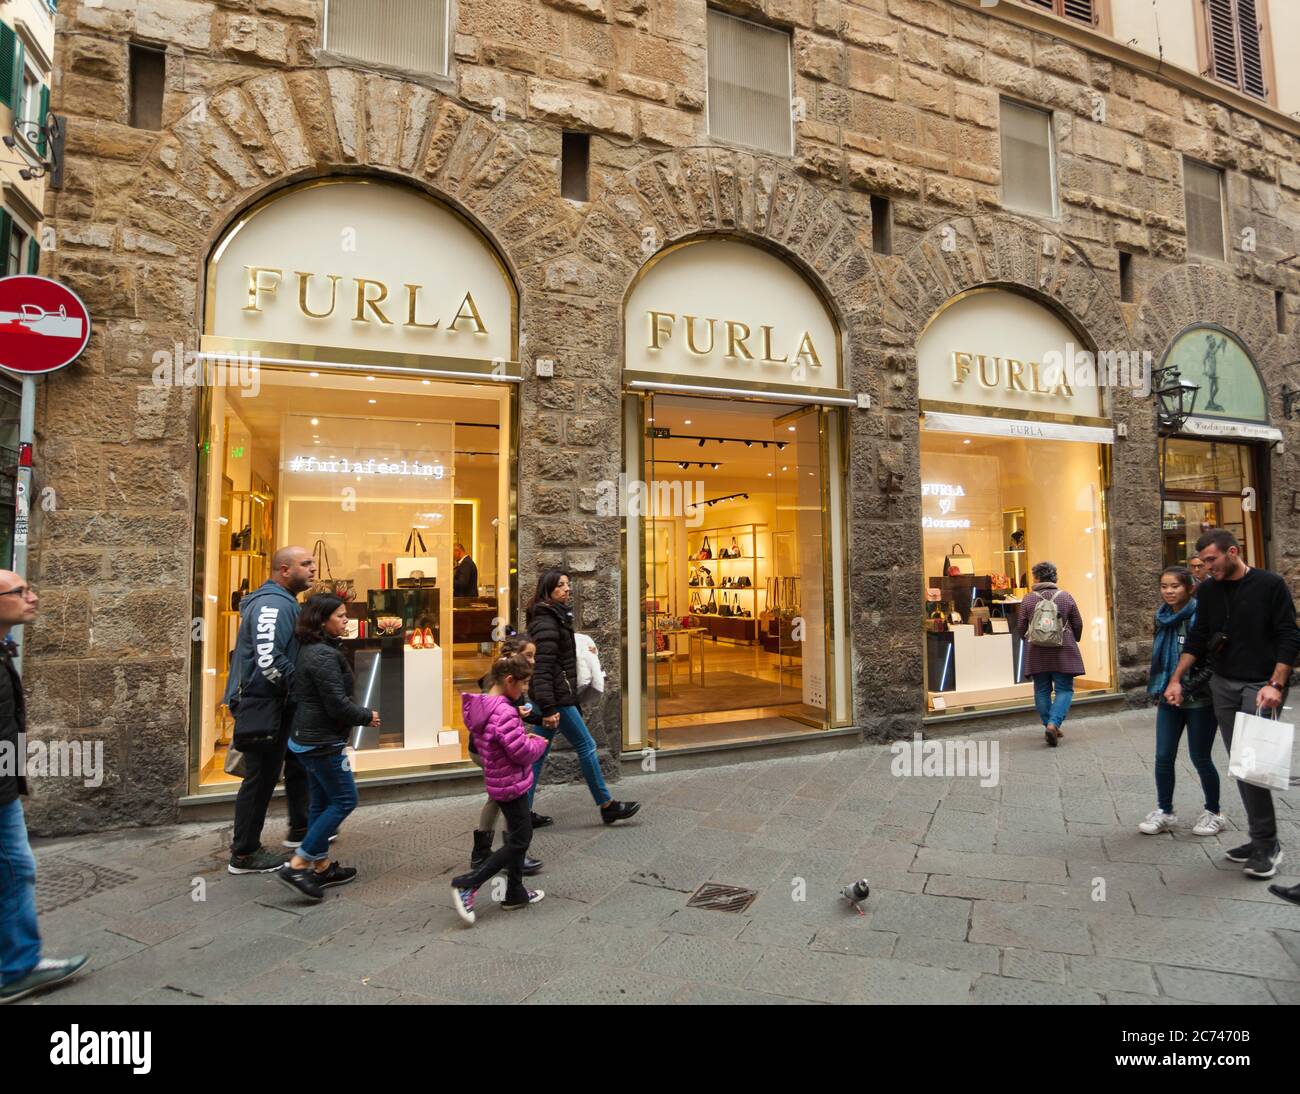 Firenze, Italia - 04 Novembre 2017: Vista esterna del negozio Furla di Firenze. Furla è un'azienda italiana di moda di lusso creata dalla Furl Foto Stock